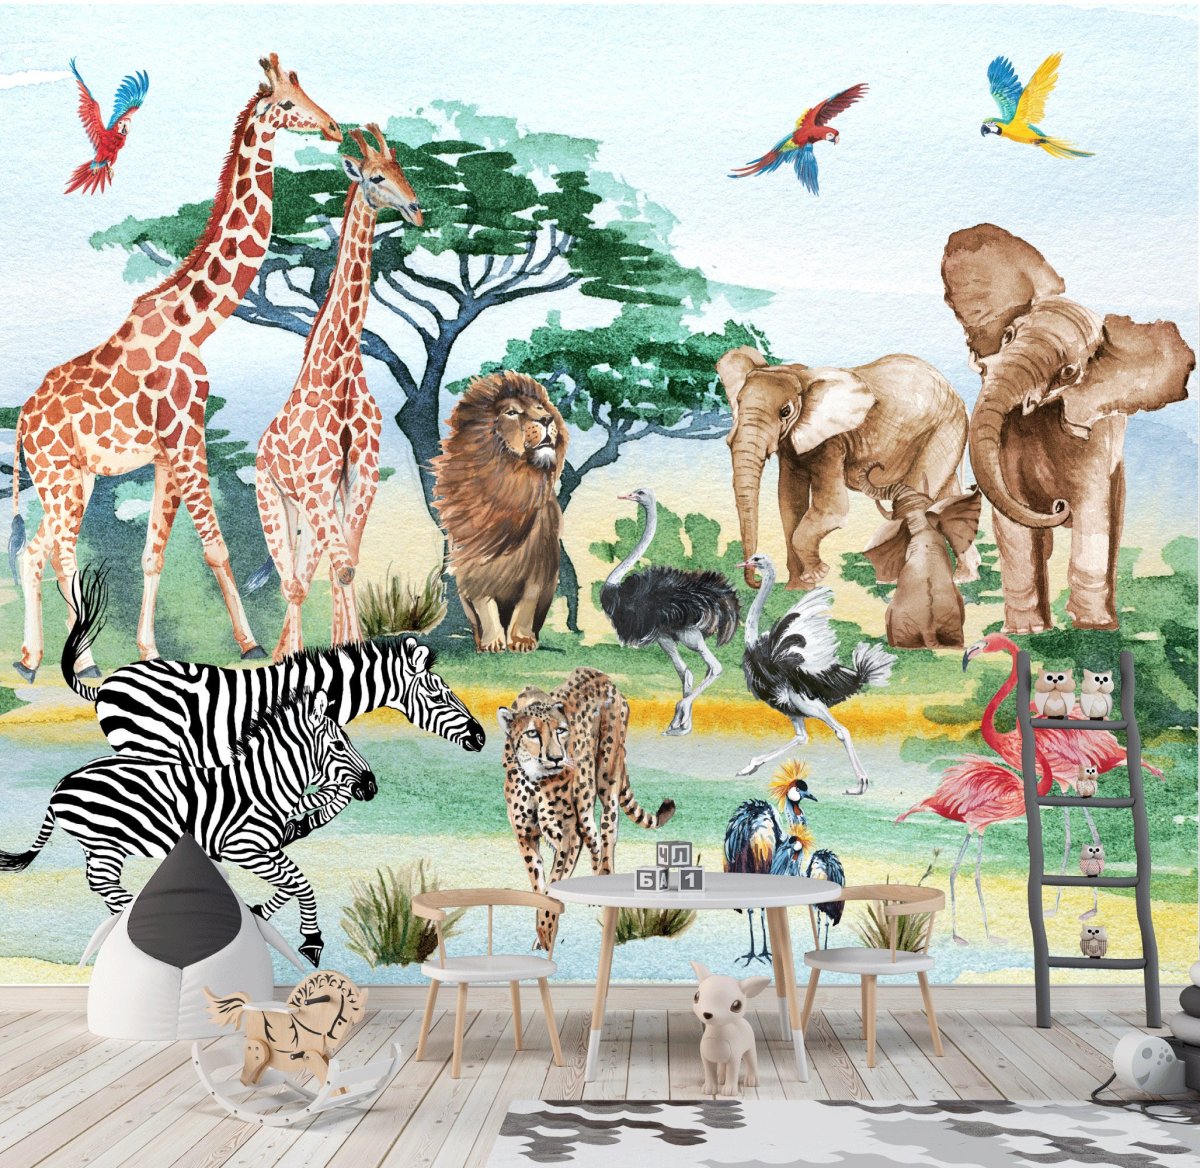 Safaritapete mit exotischen Tieren, Giraffen, Elefanten, Löwen